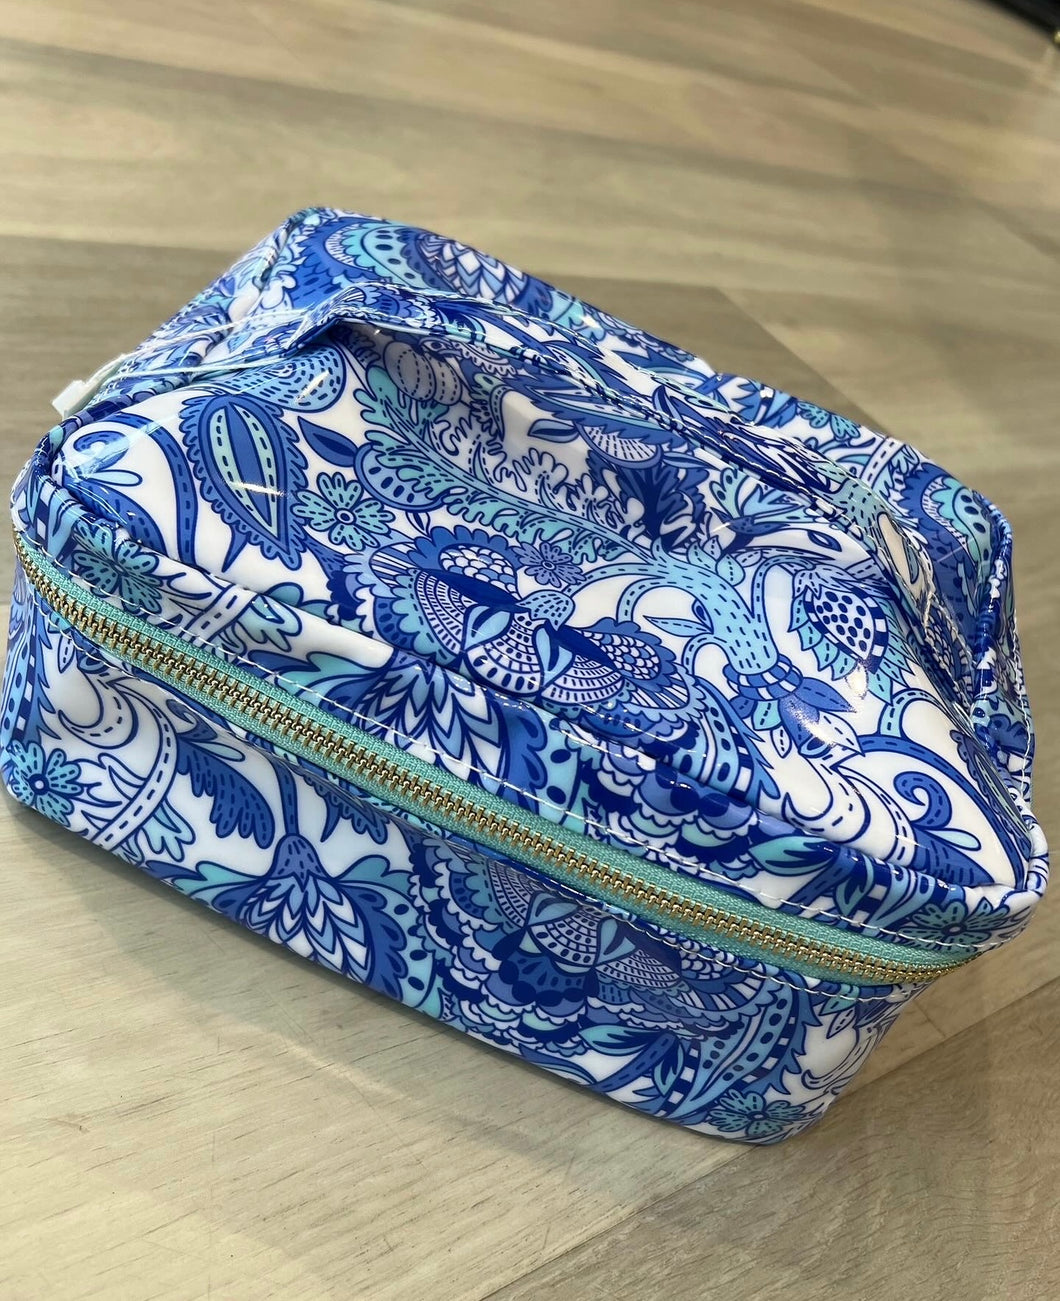 TRVL Paisley Luxe Gloss Top Handle Bag